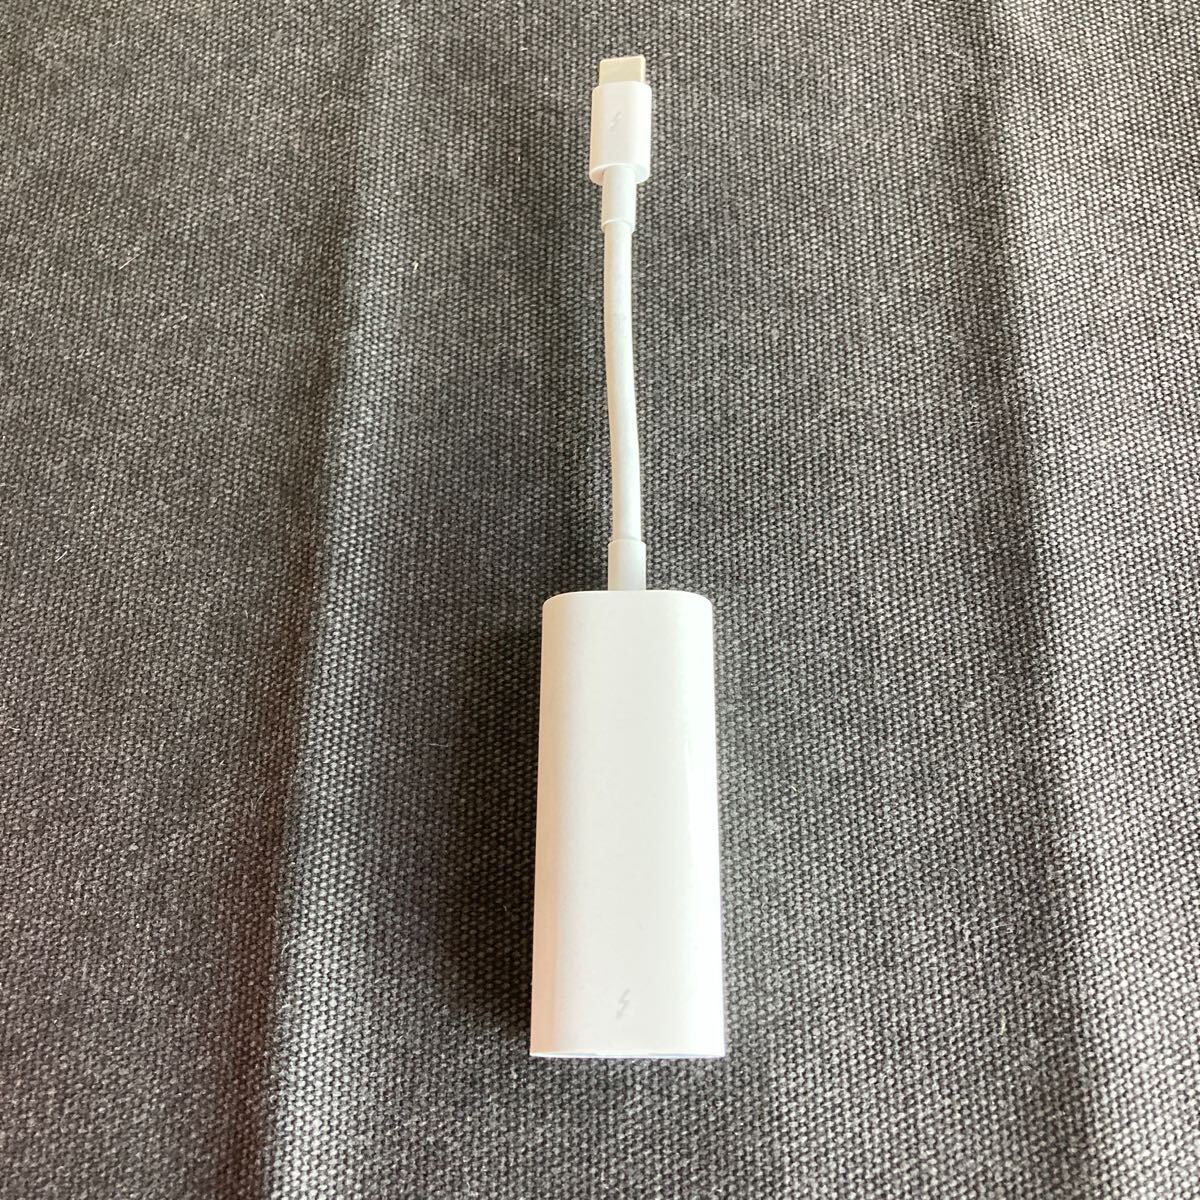 【動作未確認】Apple アップル Thunderbolt 3 USB-C Thunderbolt 2アダプタ A1790【送料無料】の画像1